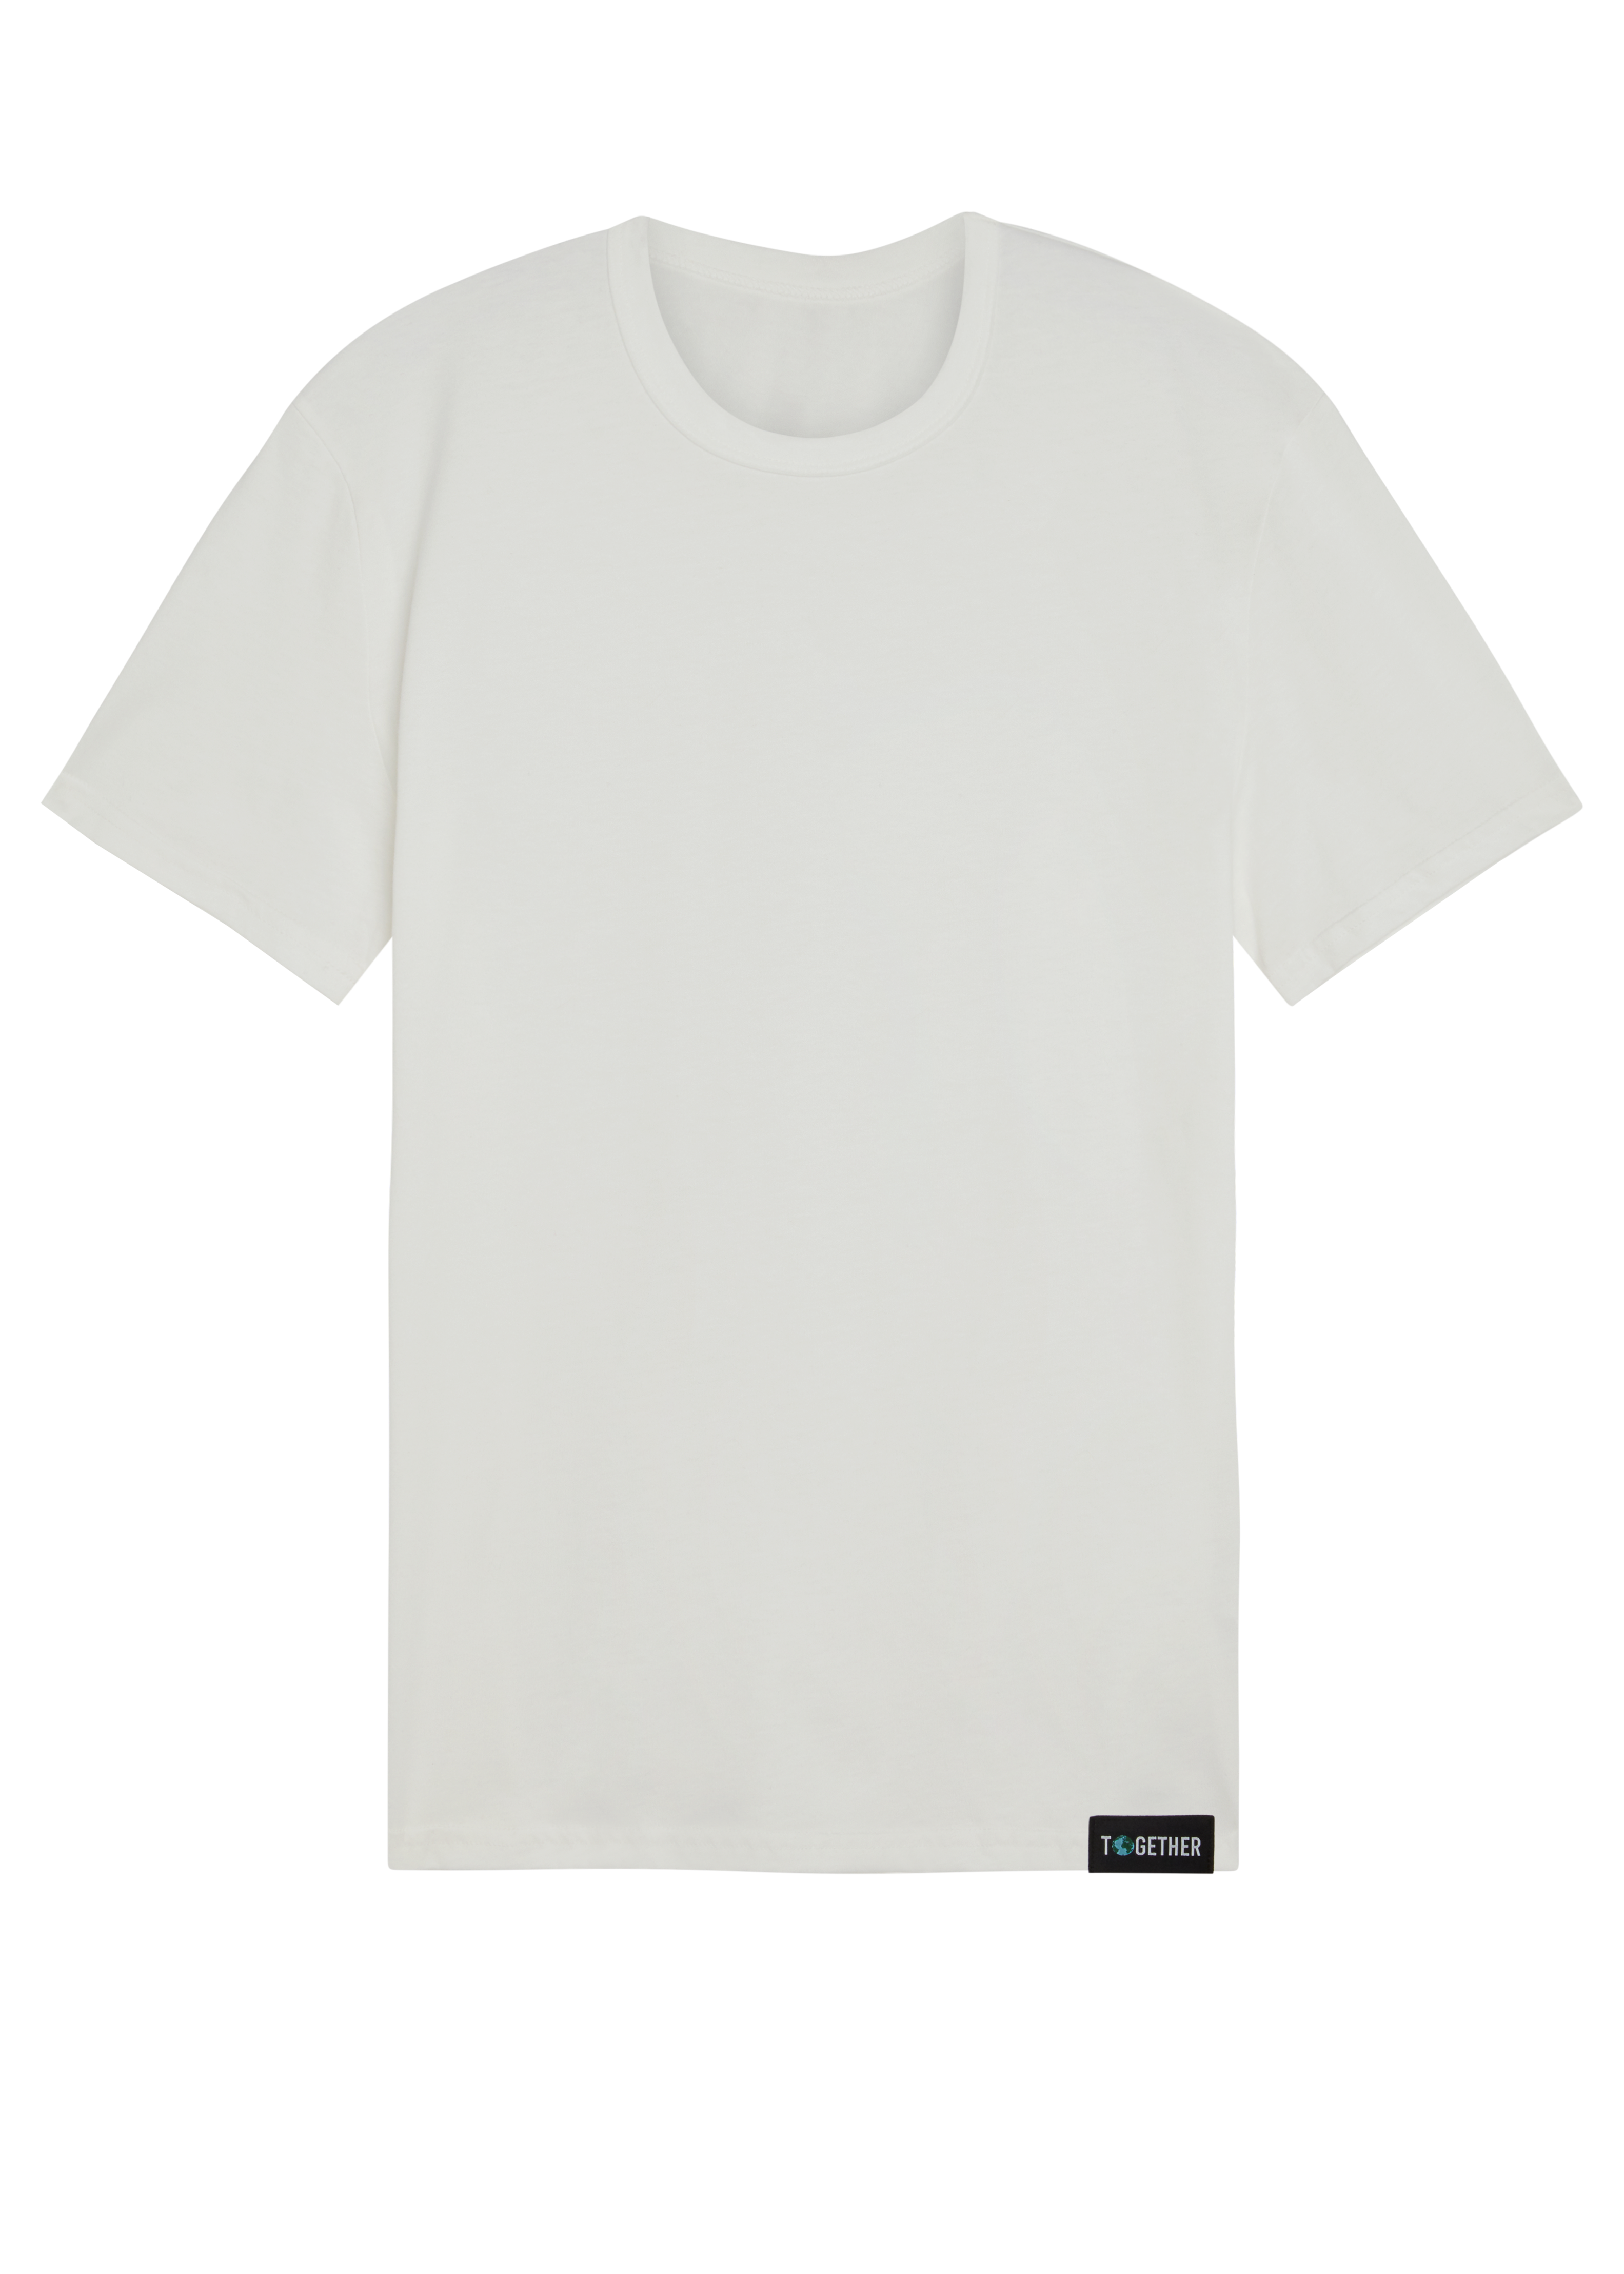 White Organic T-Shirt